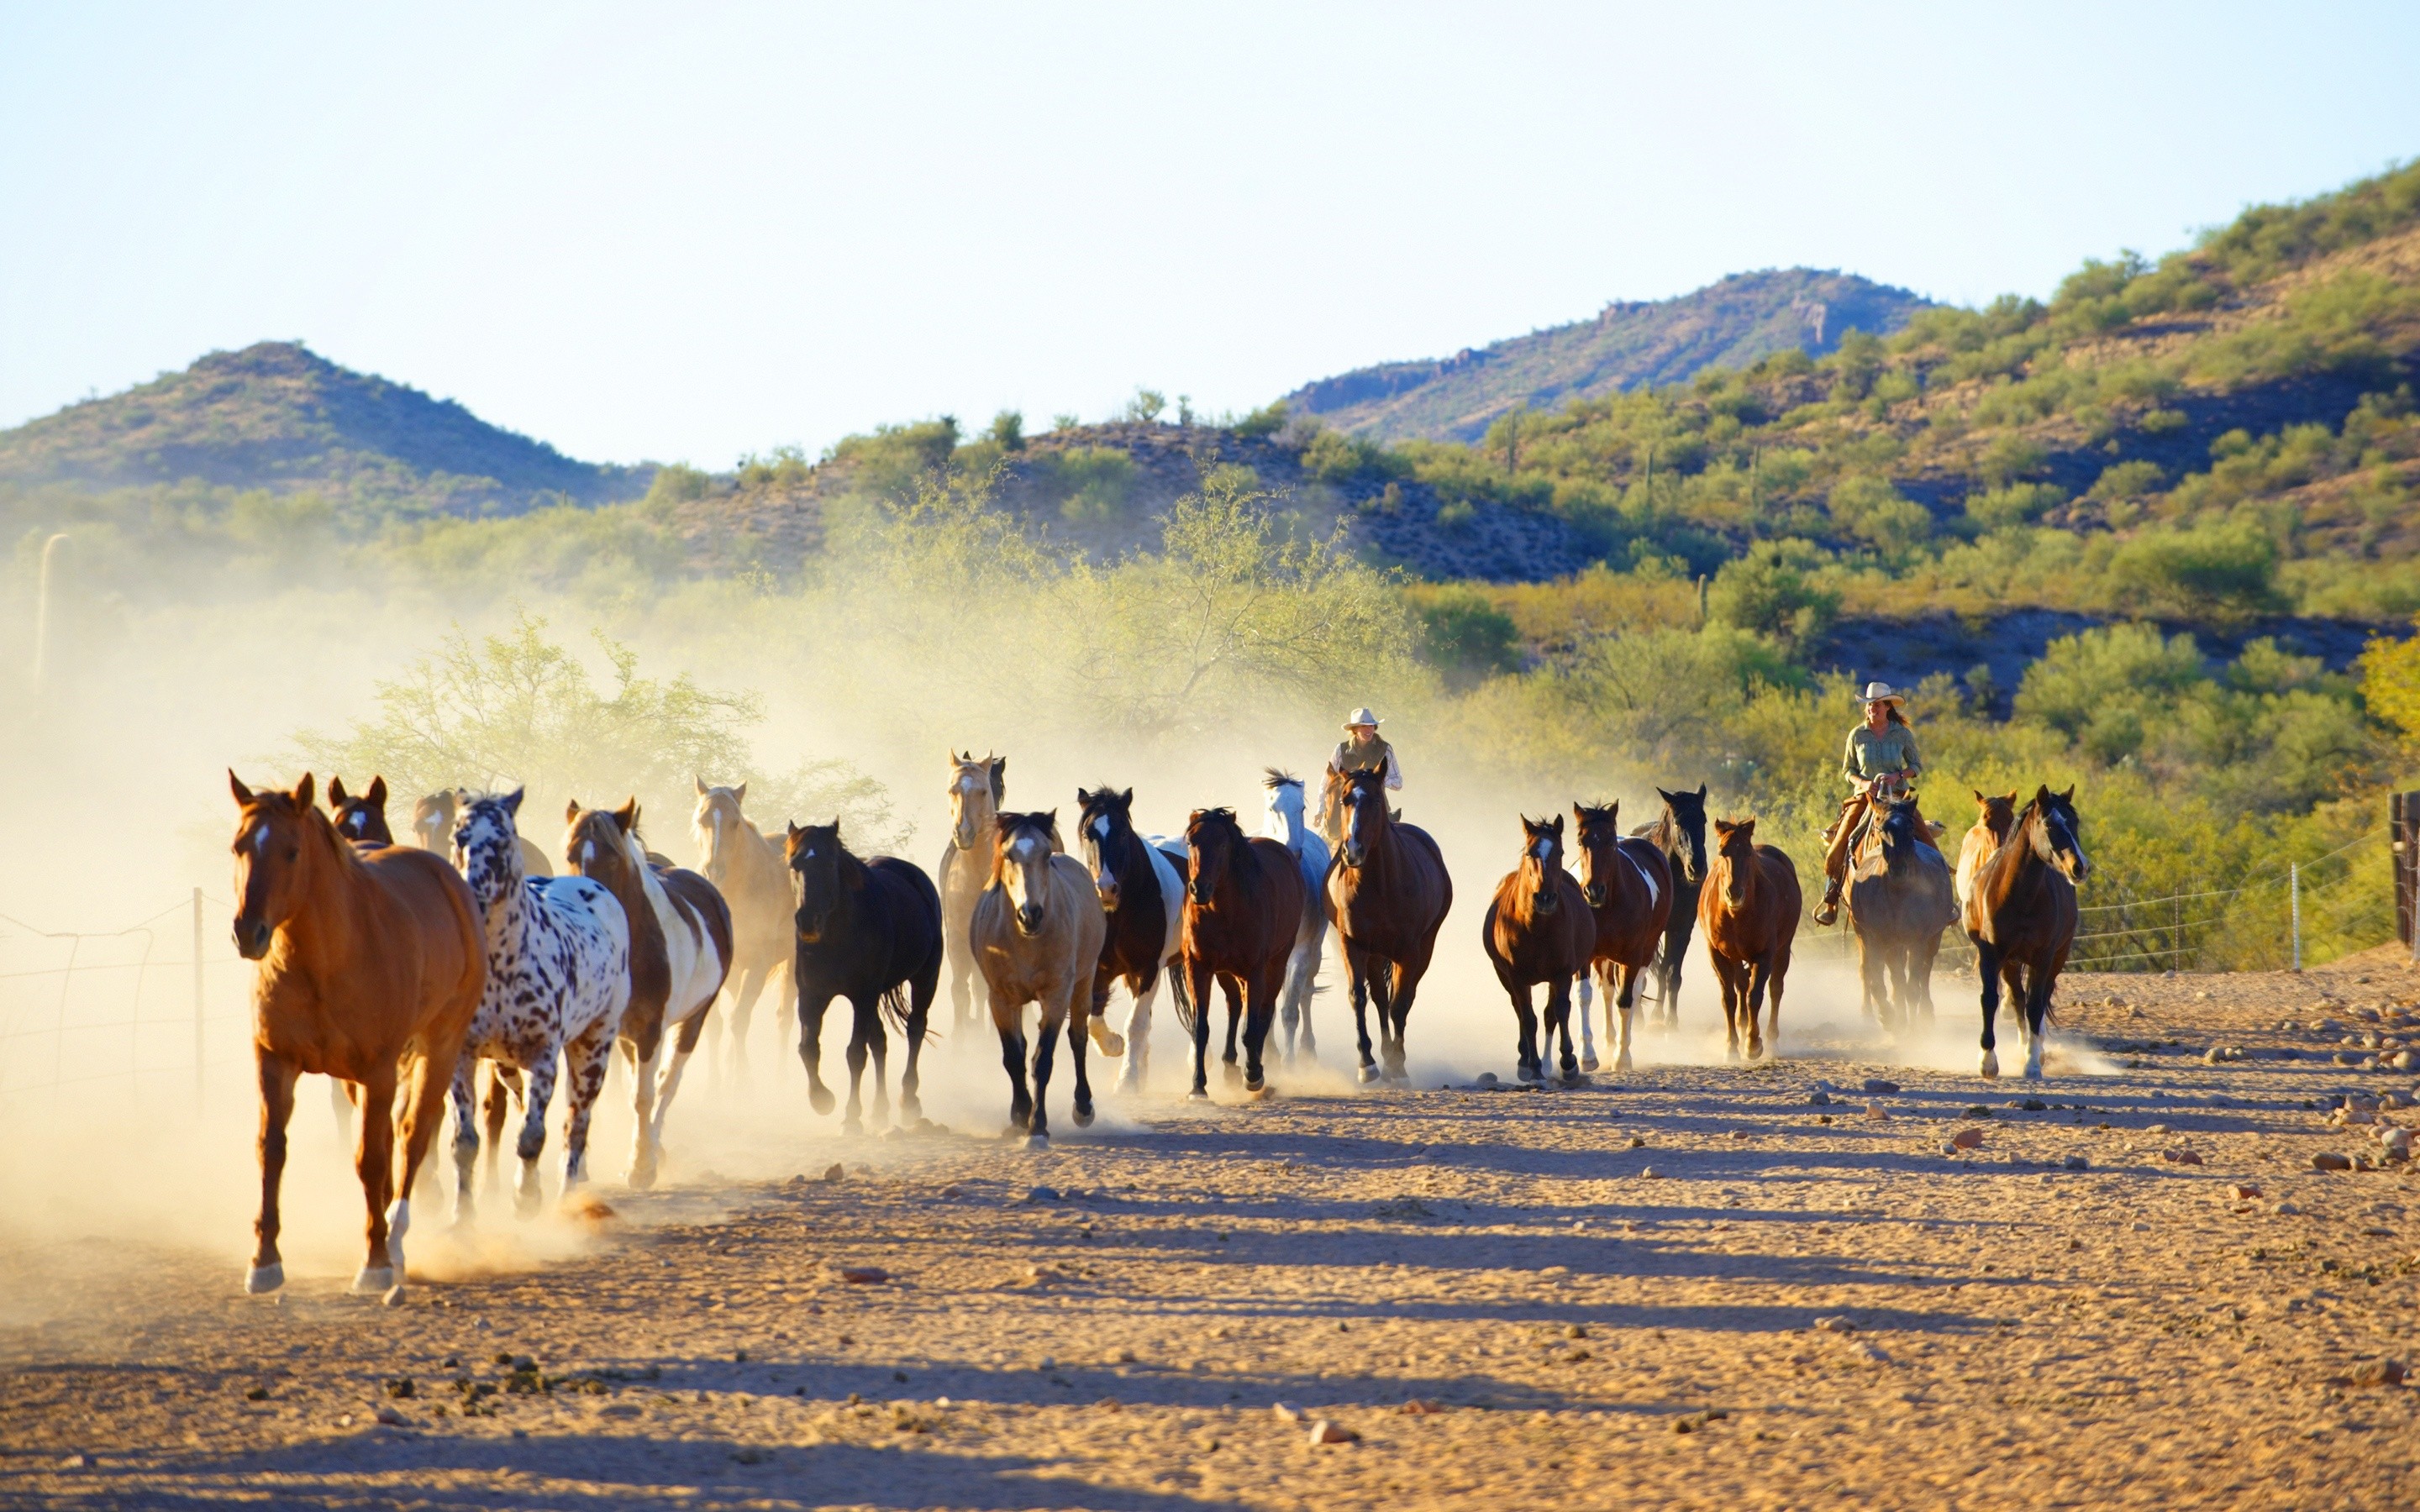 General 2880x1800 animals dust dirt horse hills mammals outdoors